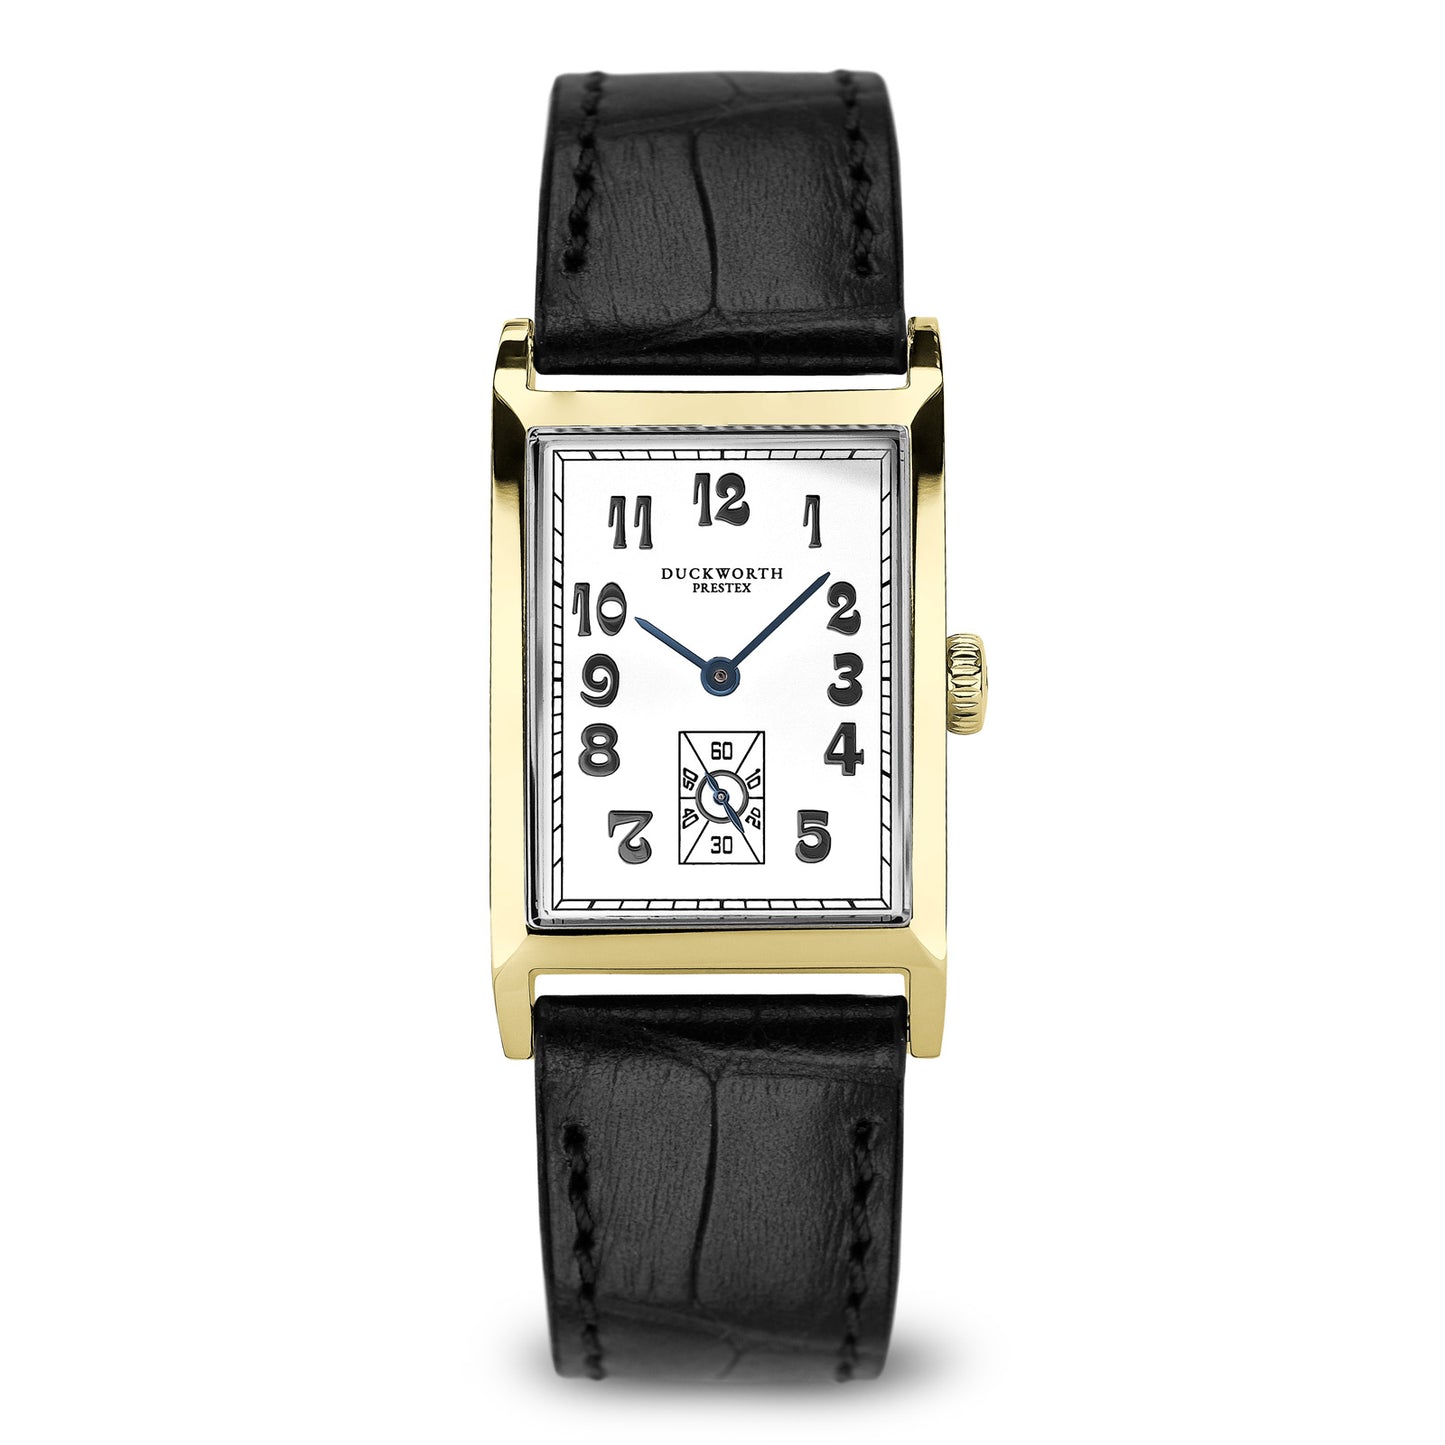 
                  
                    Centenary 18ct gold dress watch
                  
                